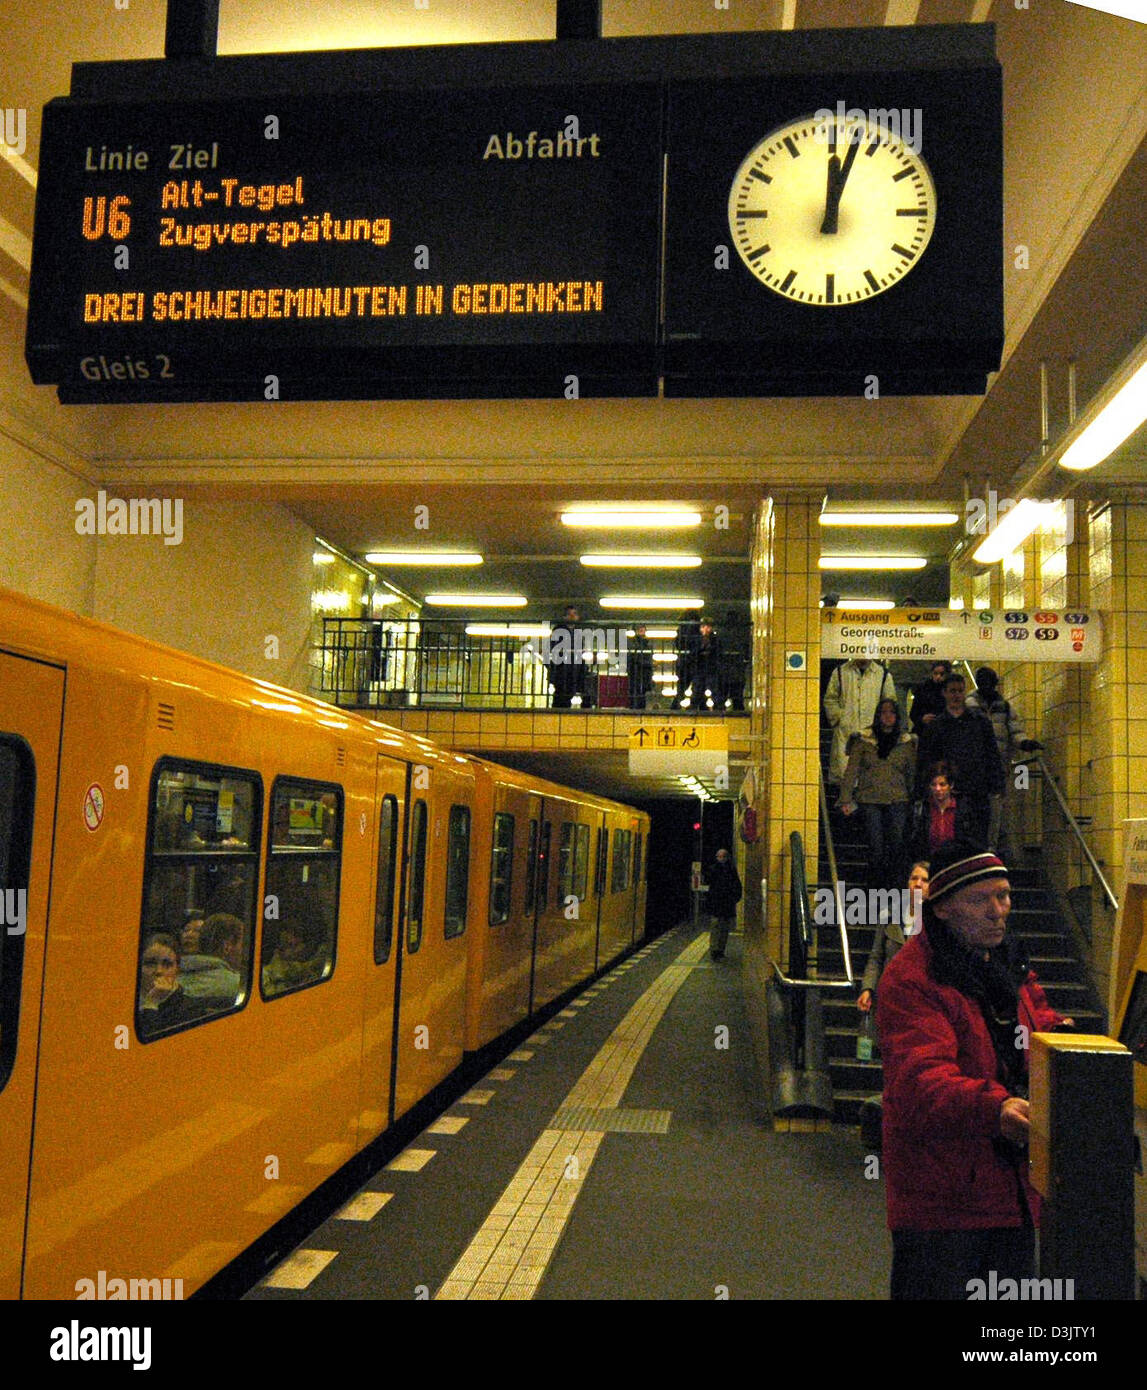 Afp) - une rame de métro s'arrête et se met pour quelques minutes de silence  à la gare Bahnhof Friedrichstrasse à Berlin, Allemagne, le mercredi 5  janvier 2005. Toute l'Europe, les victimes